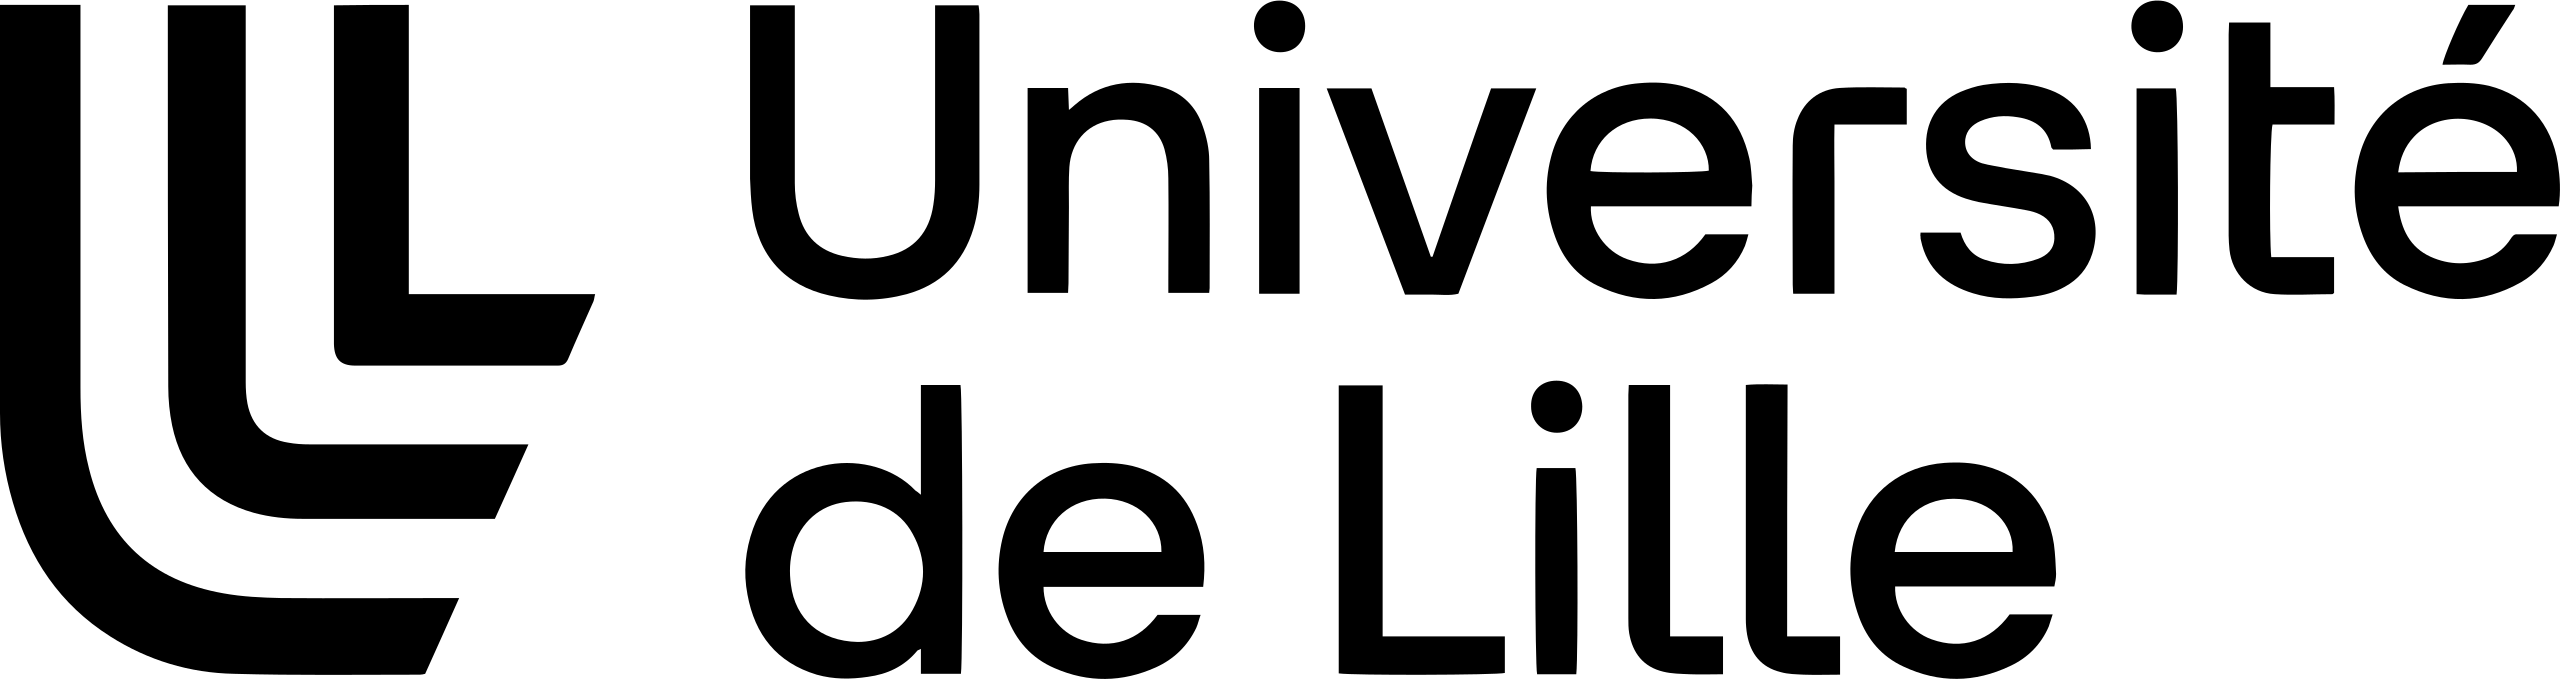 university of lille logo